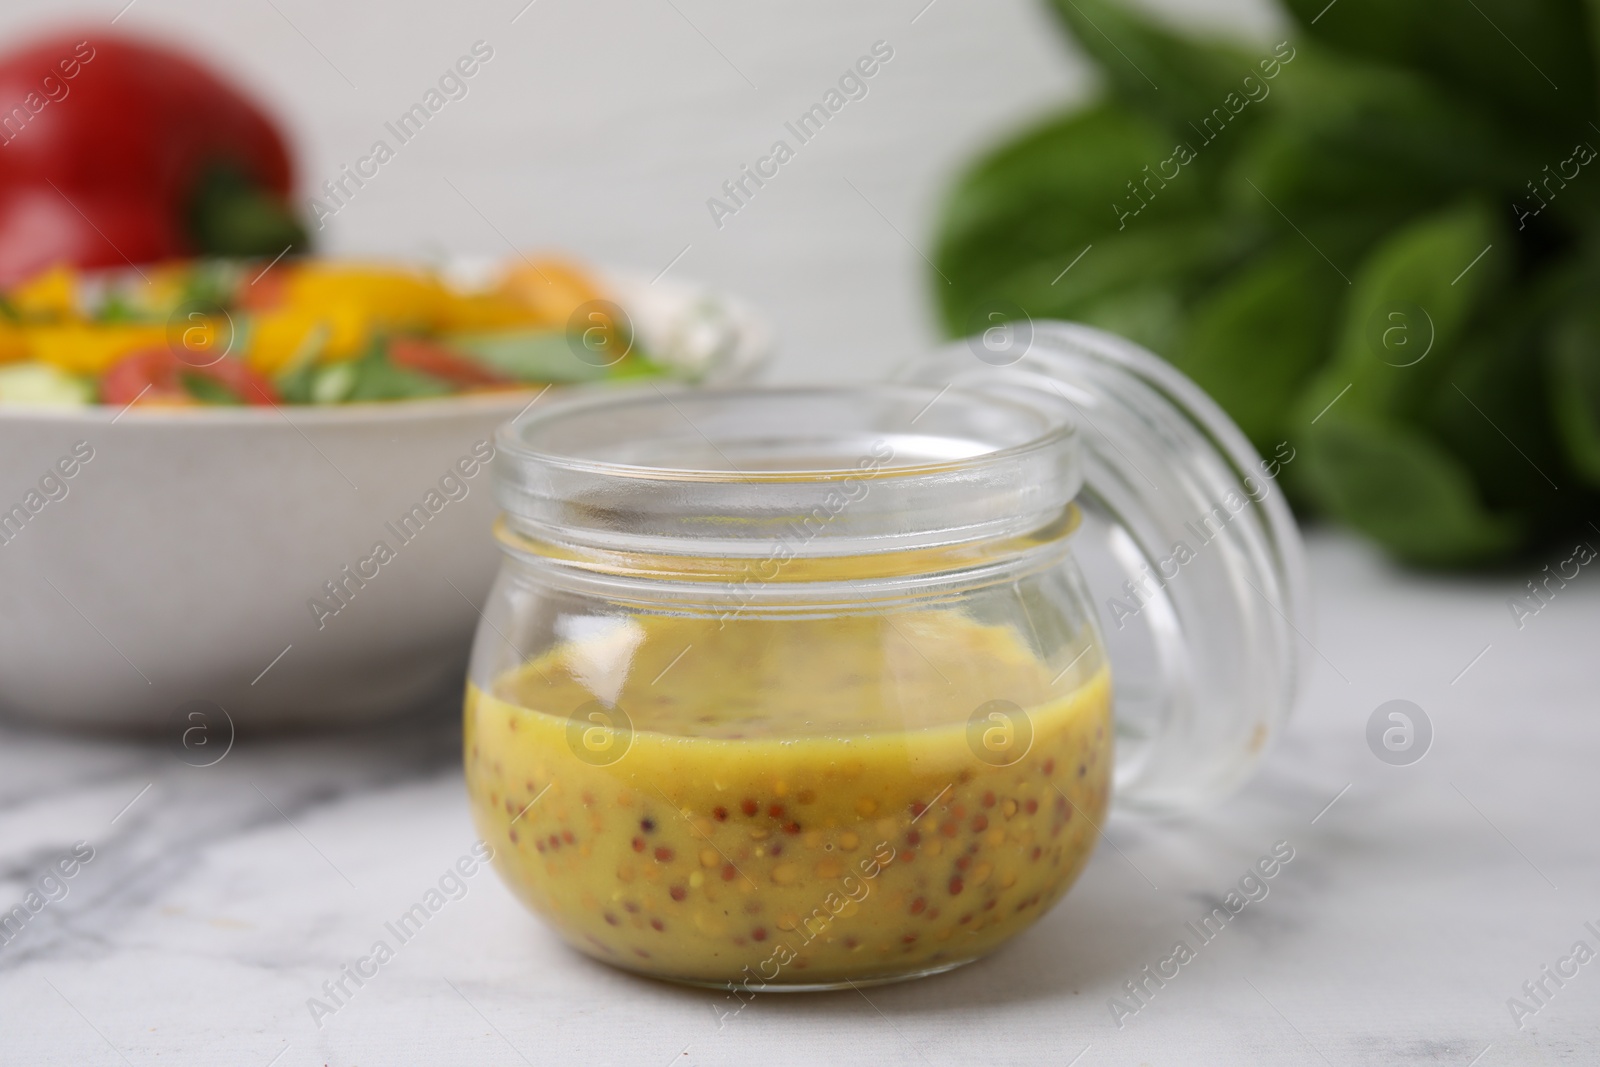 Photo of Tasty vinegar based sauce (Vinaigrette) in jar on white marble table, closeup